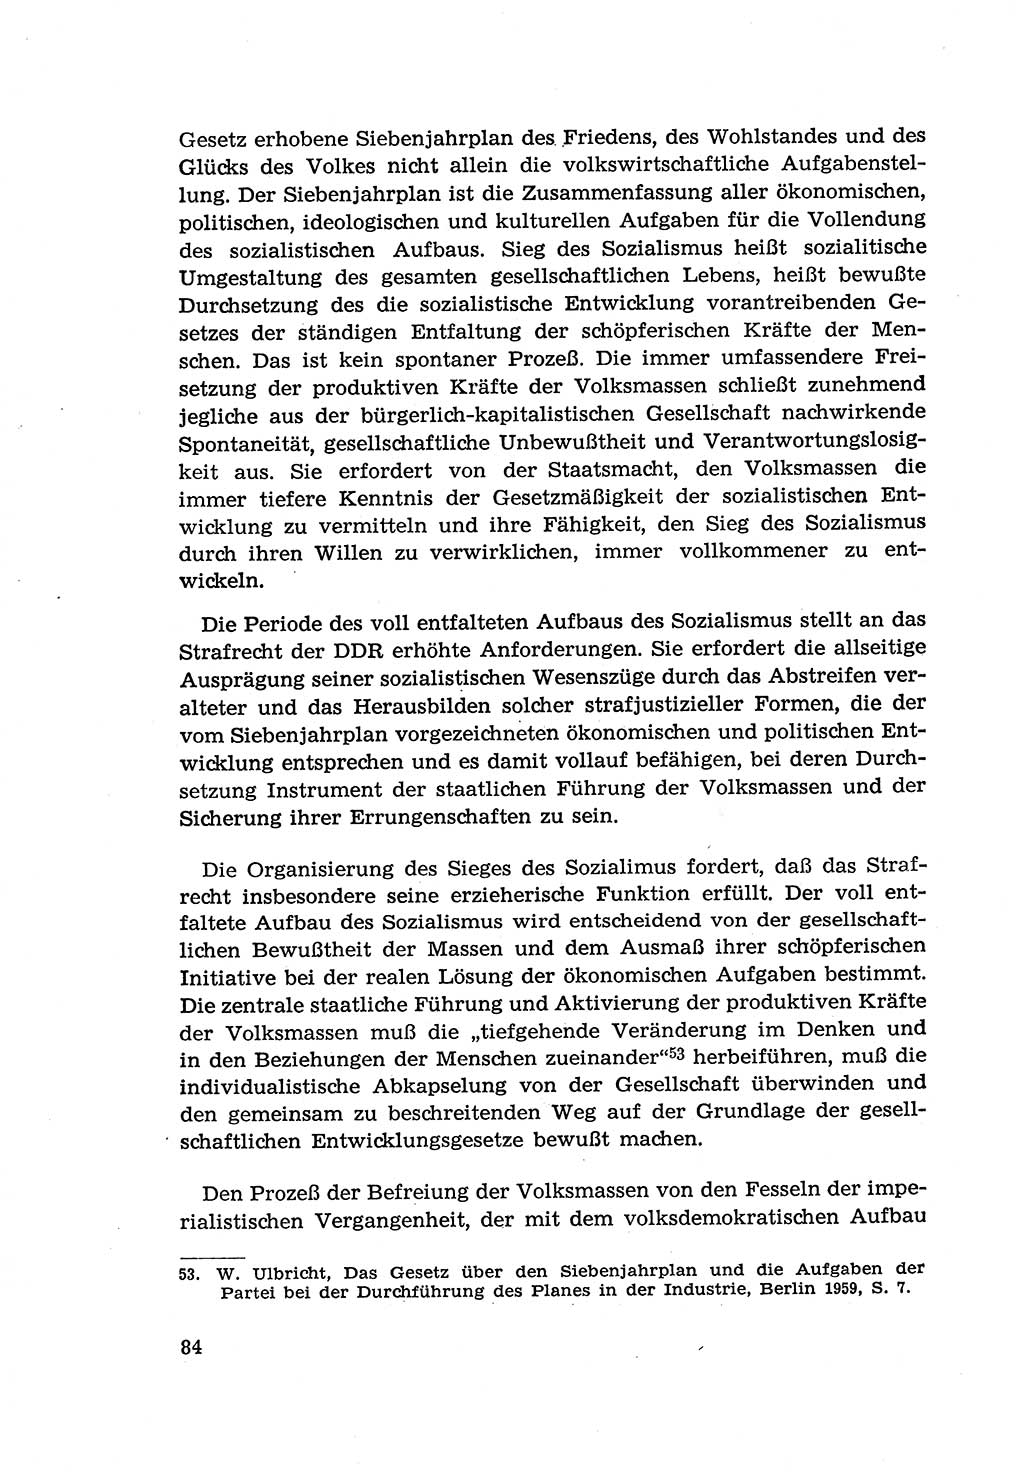 Zur Entwicklung des sozialistischen Strafrechts der Deutschen Demokratischen Republik (DDR) 1960, Seite 84 (Entw. soz. Strafr. DDR 1960, S. 84)